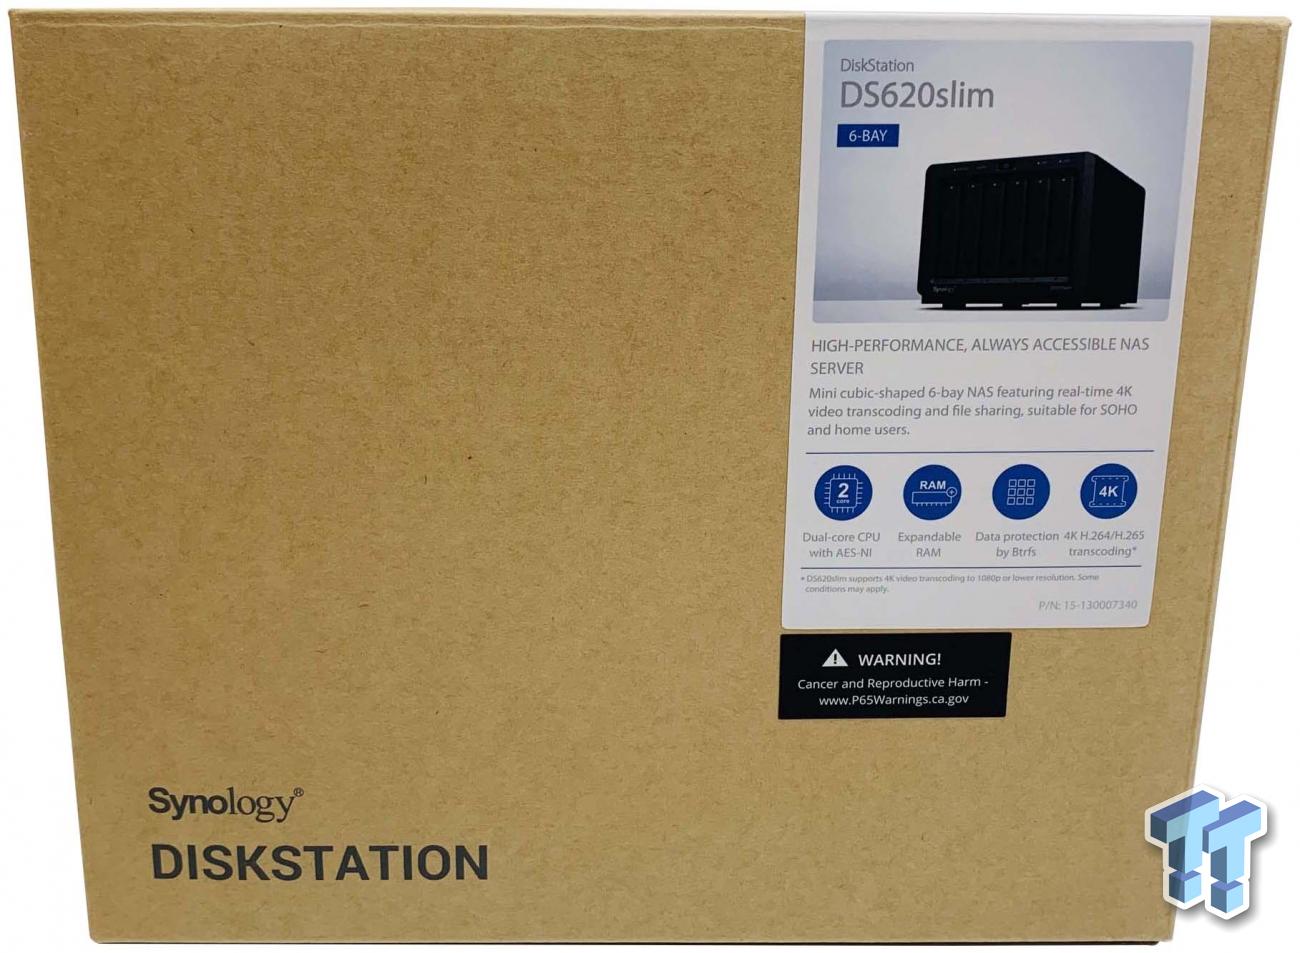 DiskStation® DS620slim